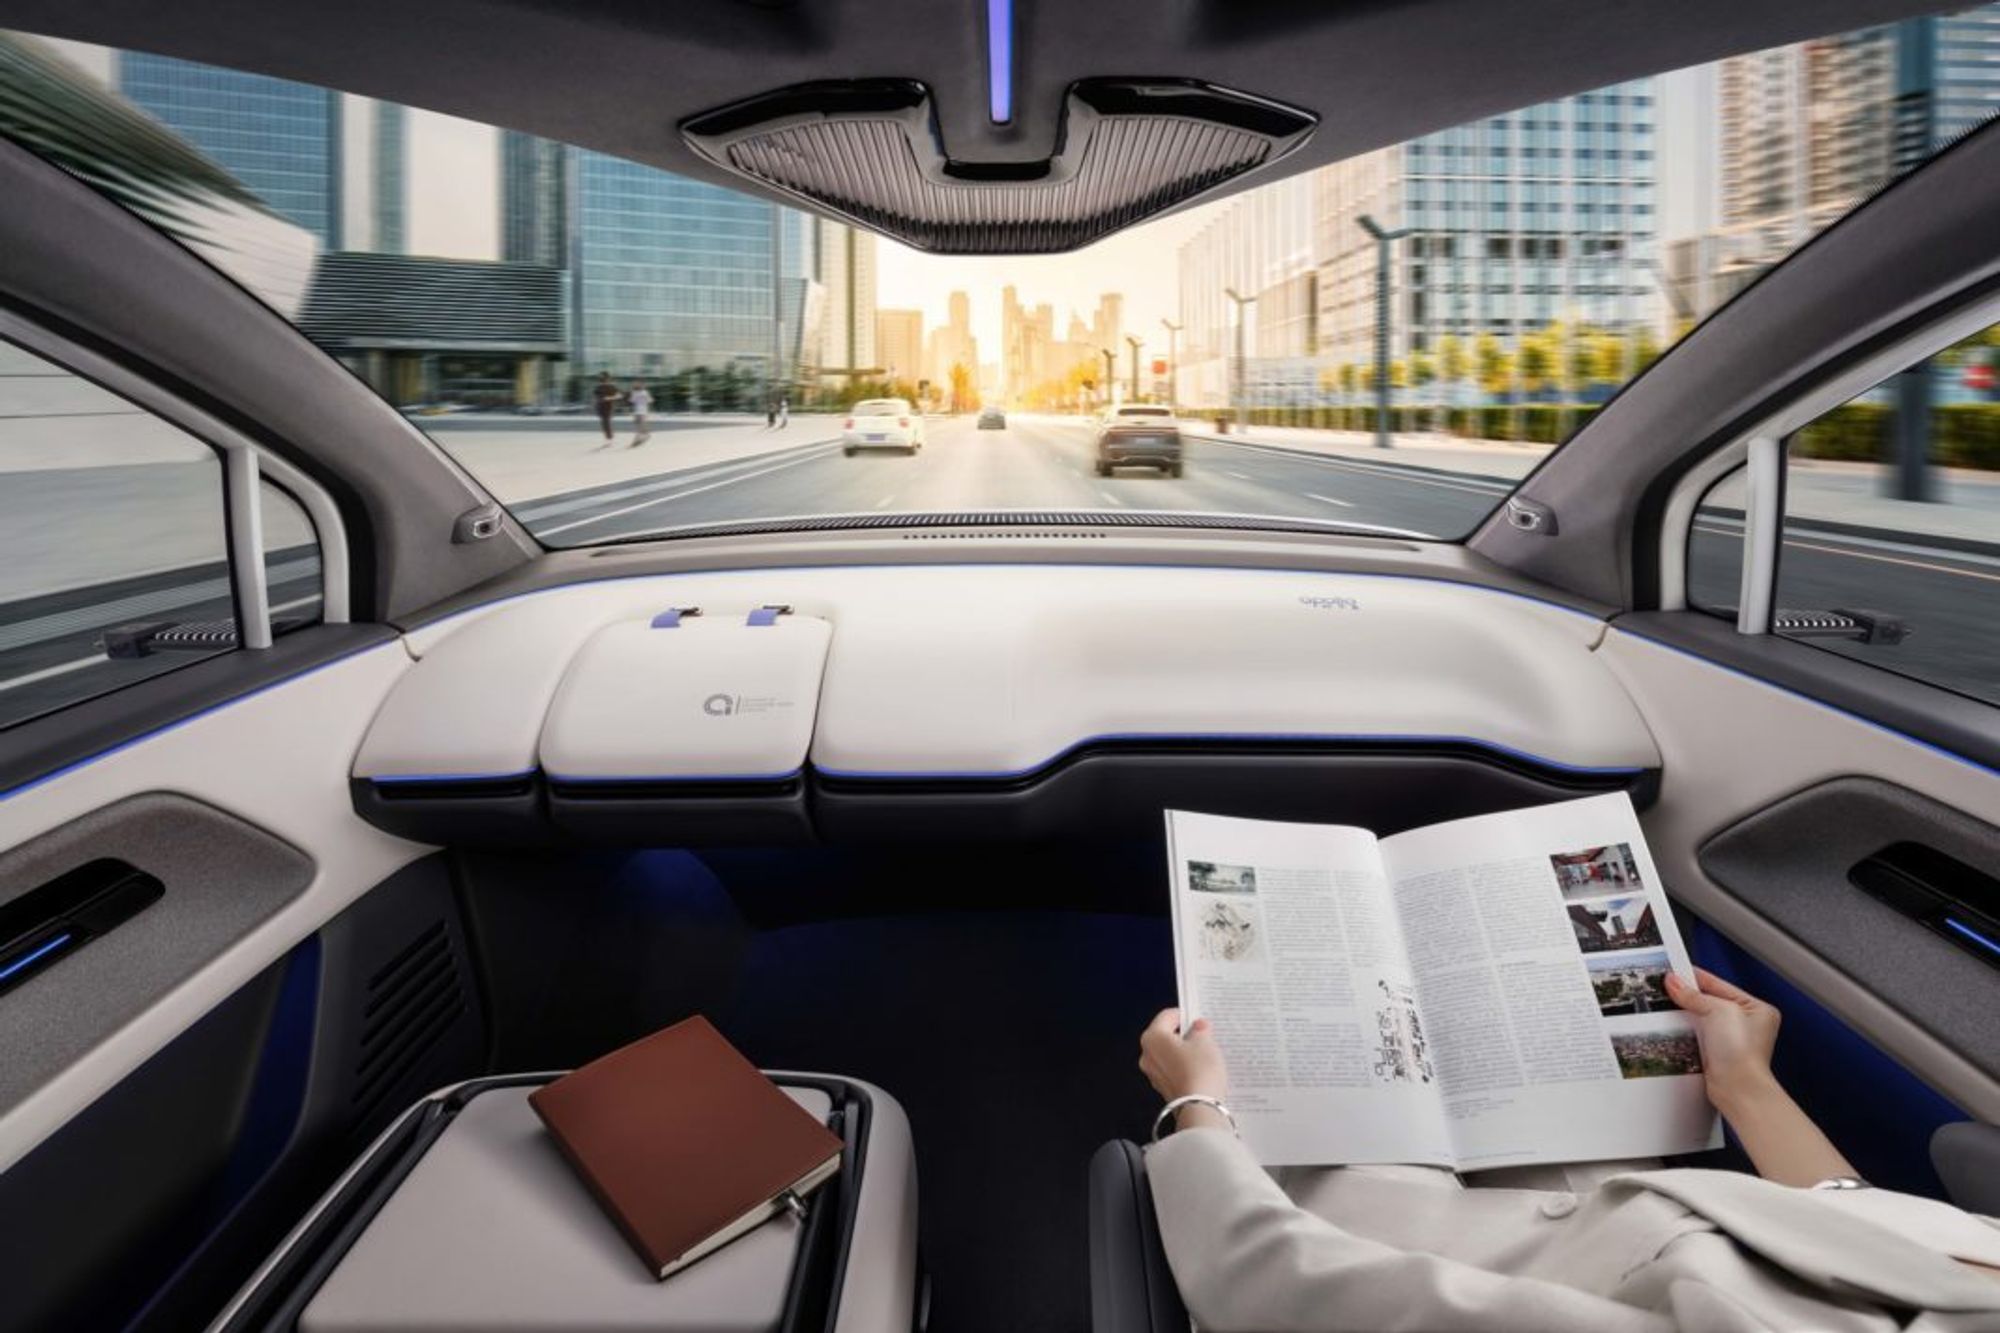 Baidu Unveils Next-Gen Autonomous Vehicle With Detachable Steering Wheel | Auto Futures